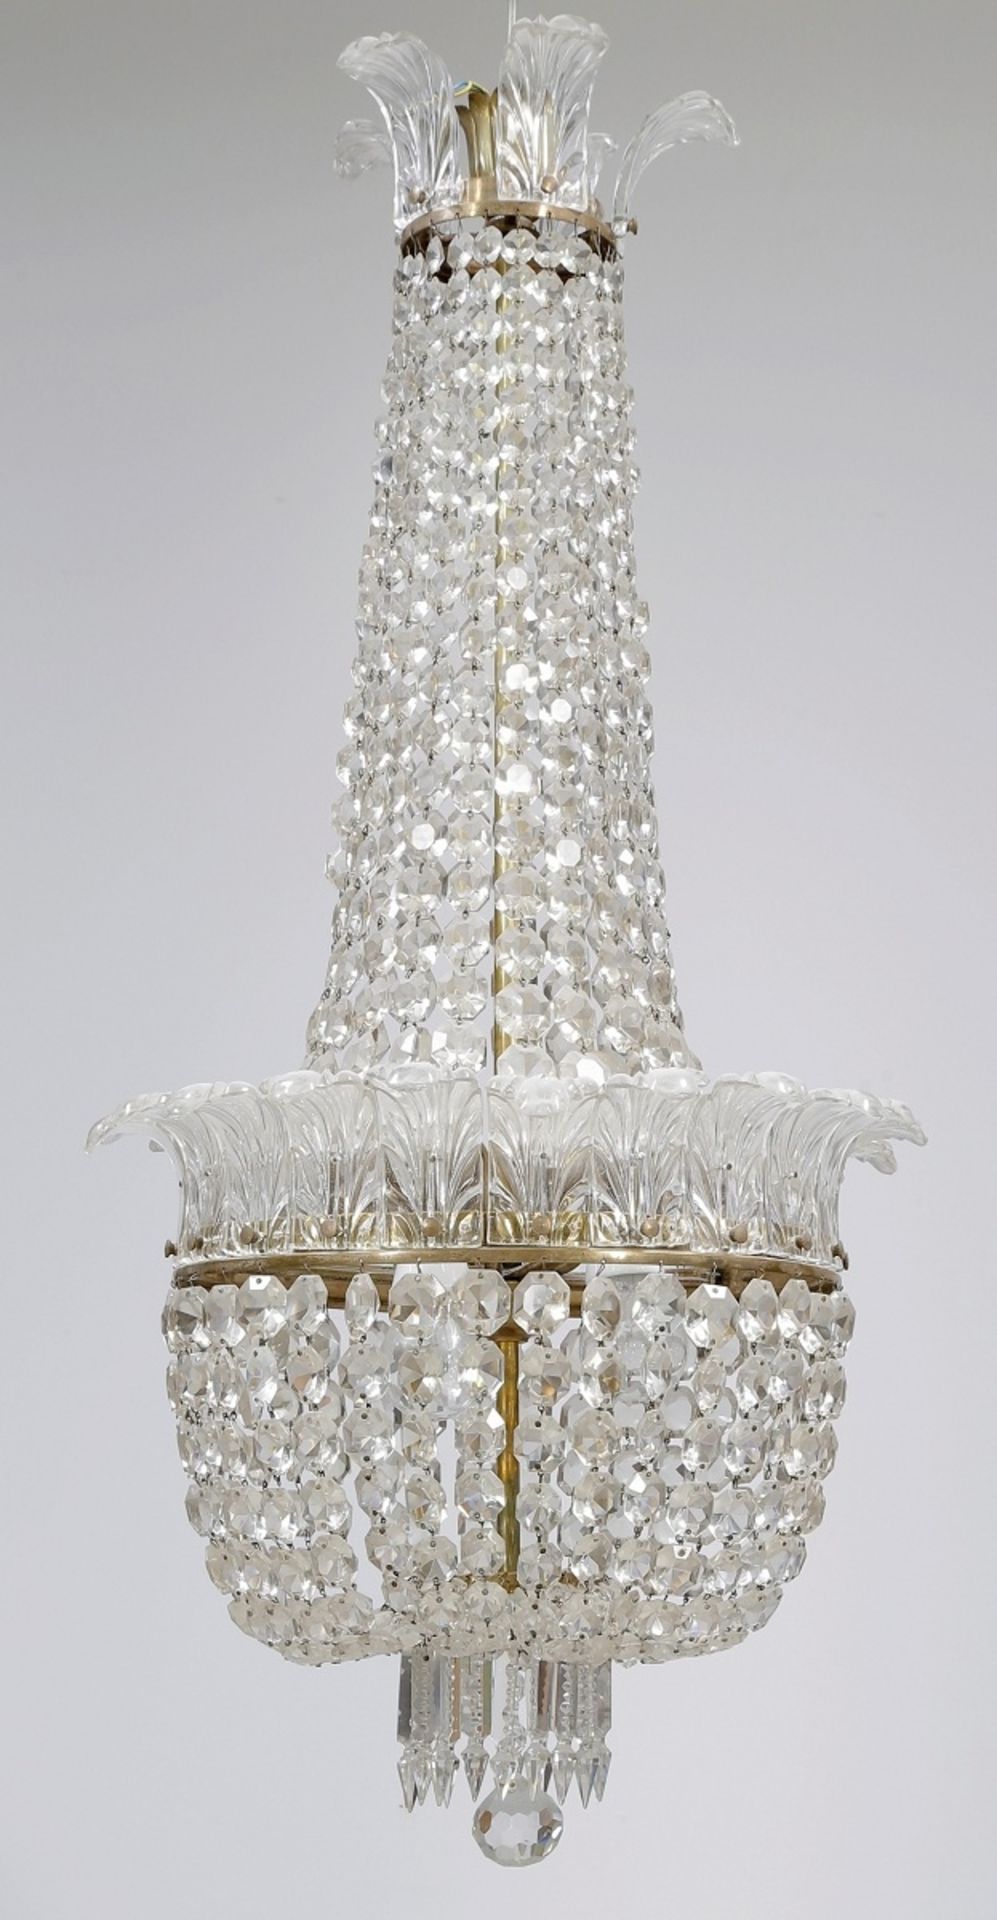 DeckenlampeFrankreich, um 1920. Kristall. H. 100 cm. D. 48 cm. Balusterförmiger Korpus aus